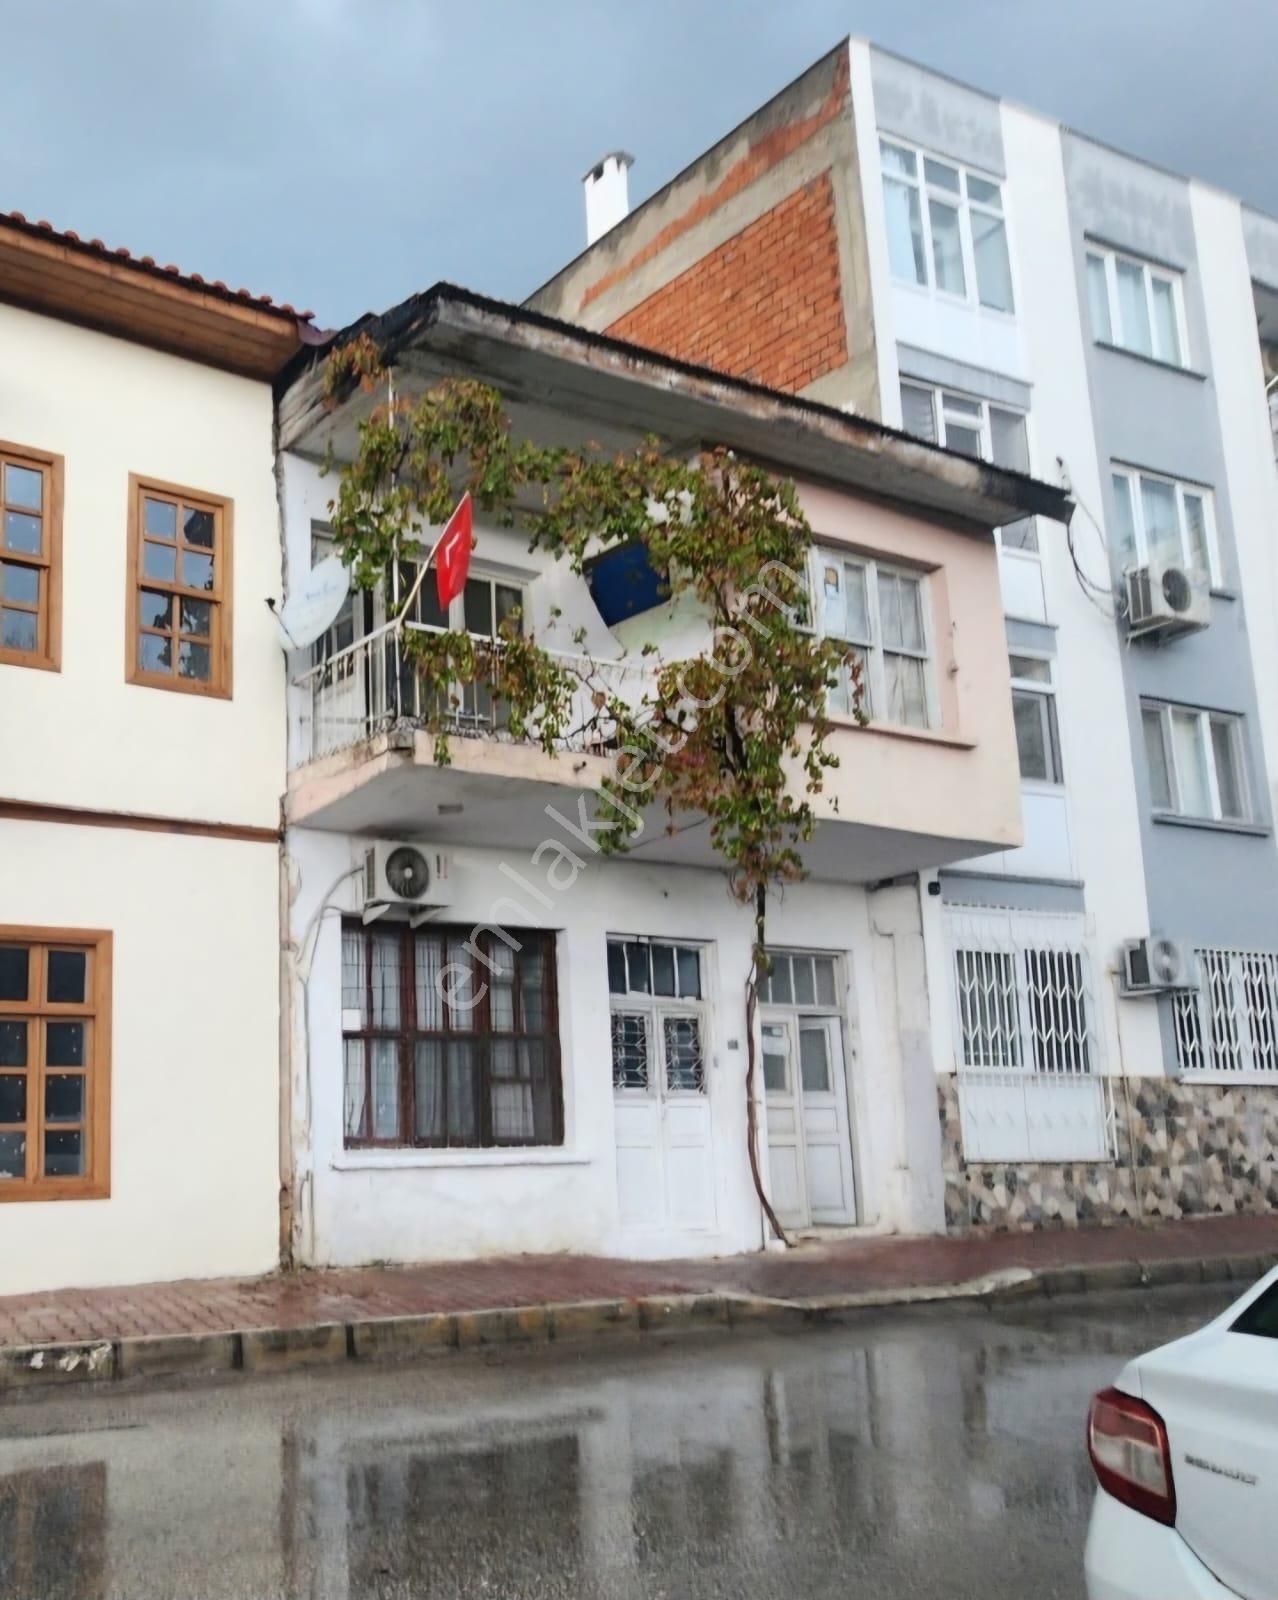 Muratpaşa Sinan Satılık Müstakil Ev  ANTALYA MERKEZ SİNAN'DA 92 m2 ARSADA SATILIK MÜSTAKİL EV